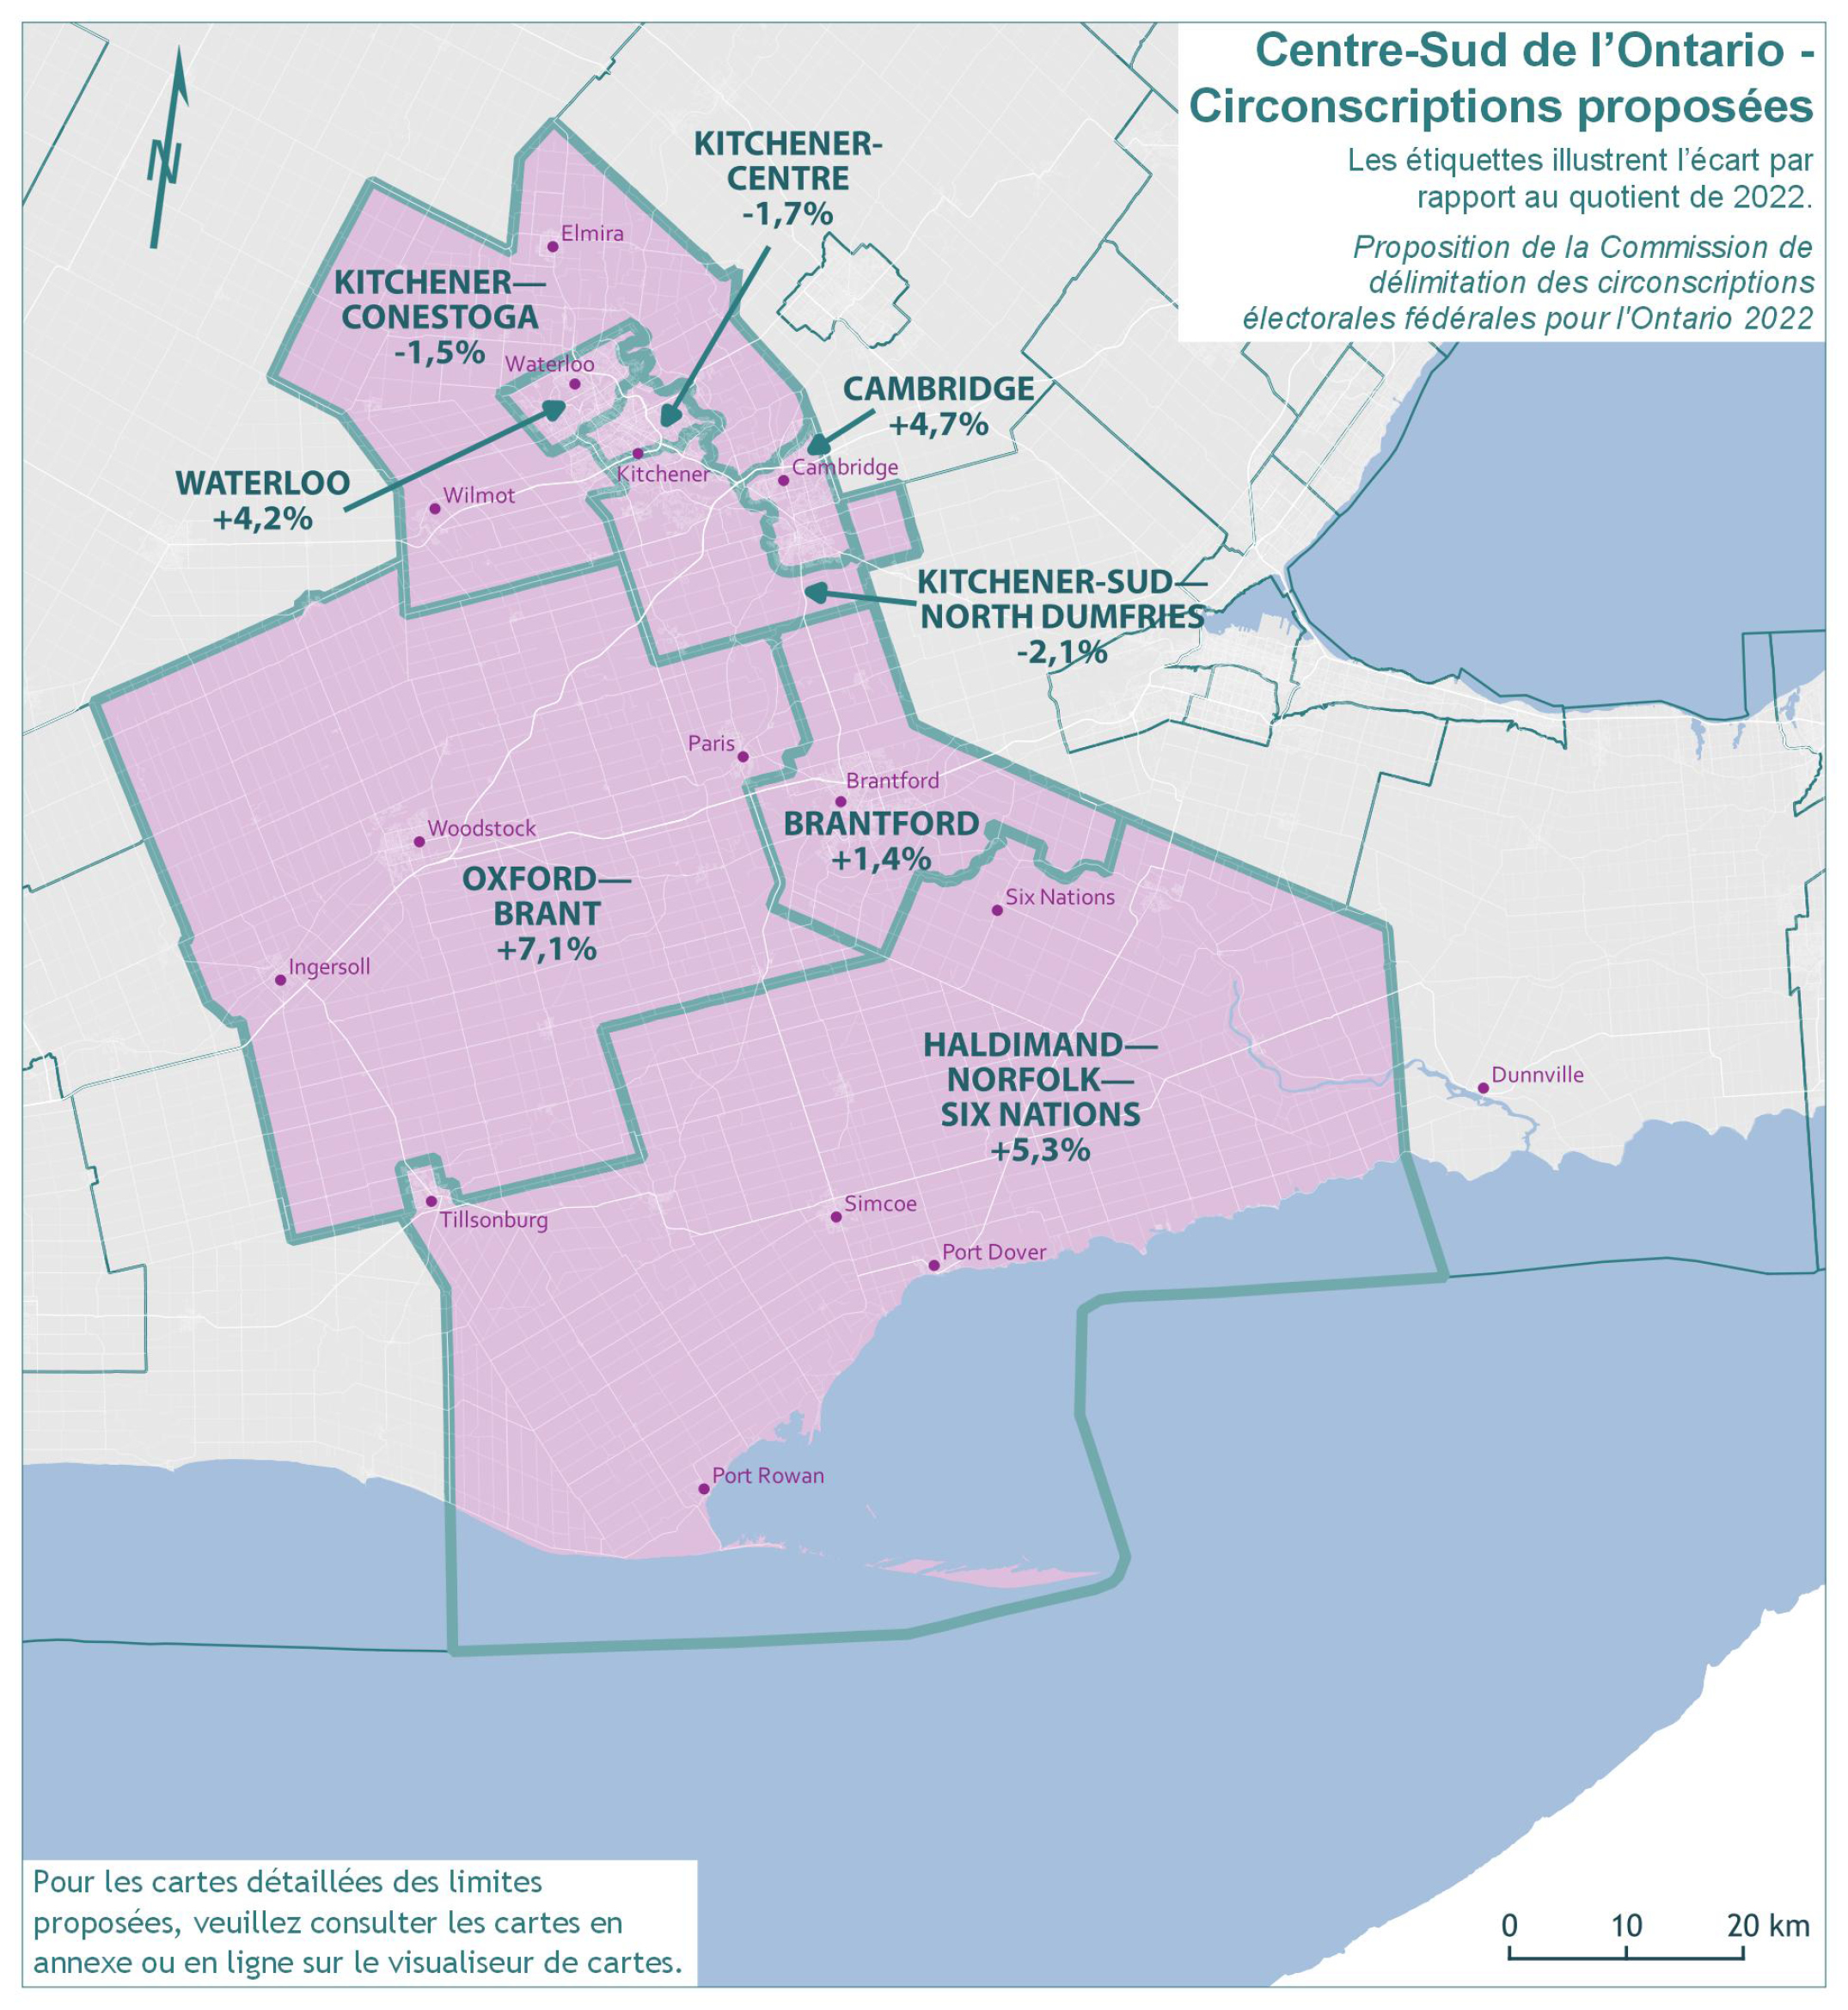 Centre-Sud de l’Ontario - Conscriptions proposées